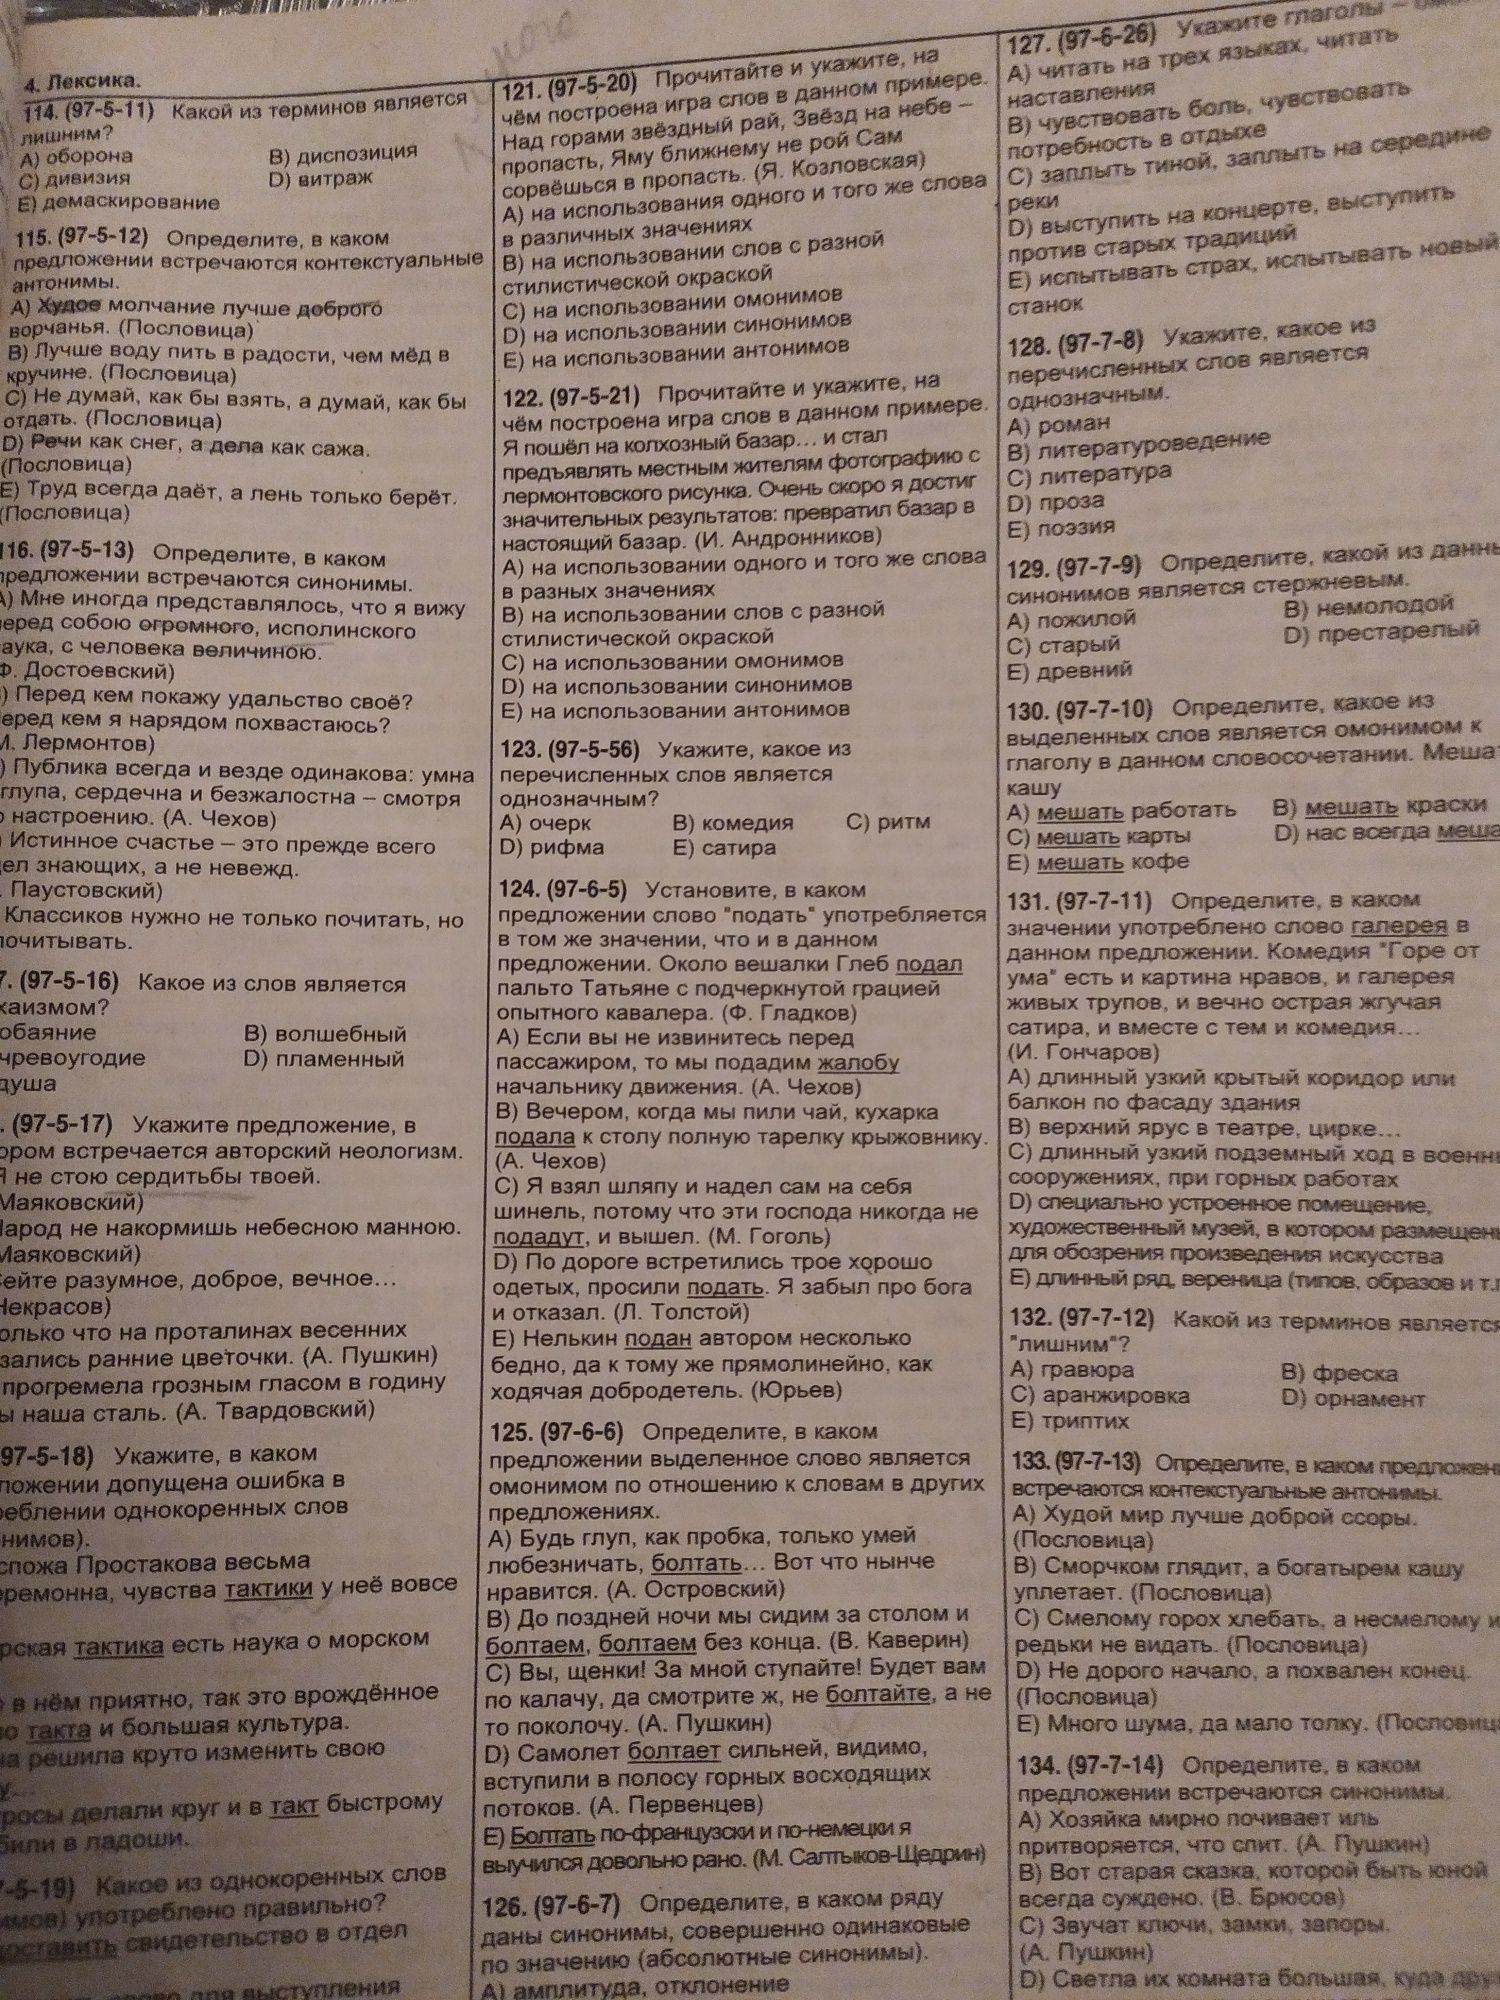 Сборник по русскому языку НОВЫЙ для абитуриентов.